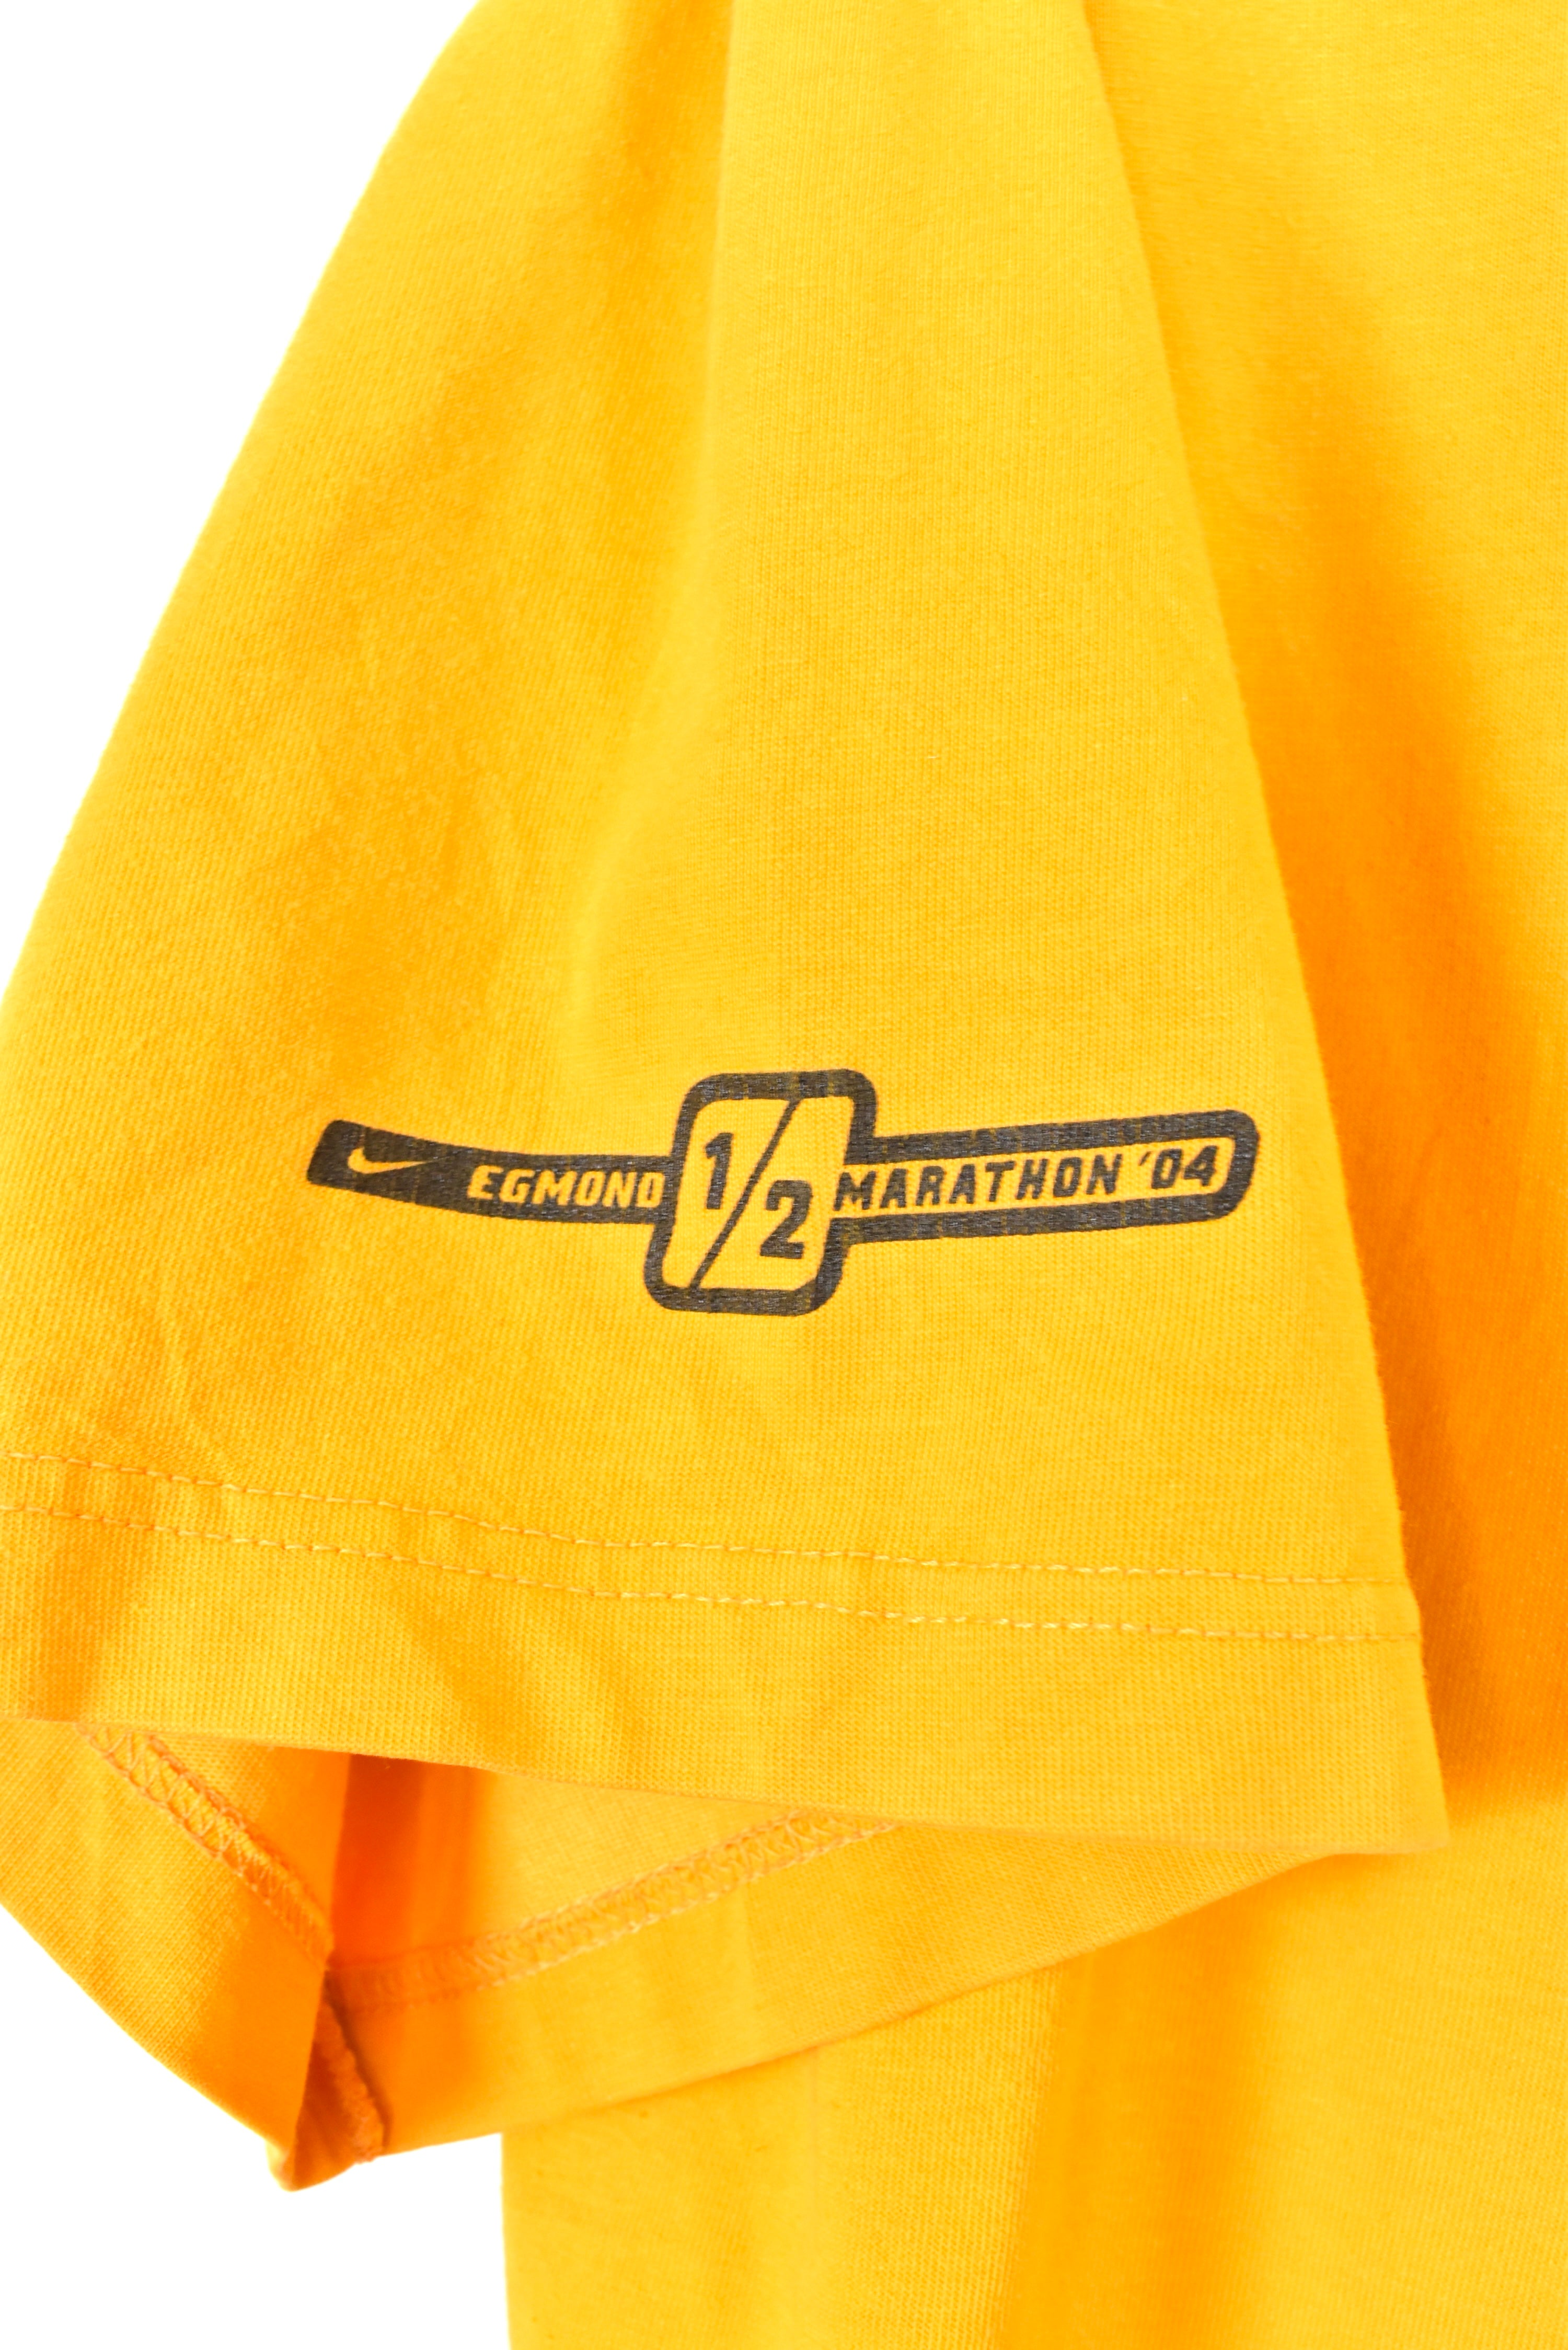 Vintage Nike shirt, Egmond marathon yellow graphic tee - AU XL NIKE